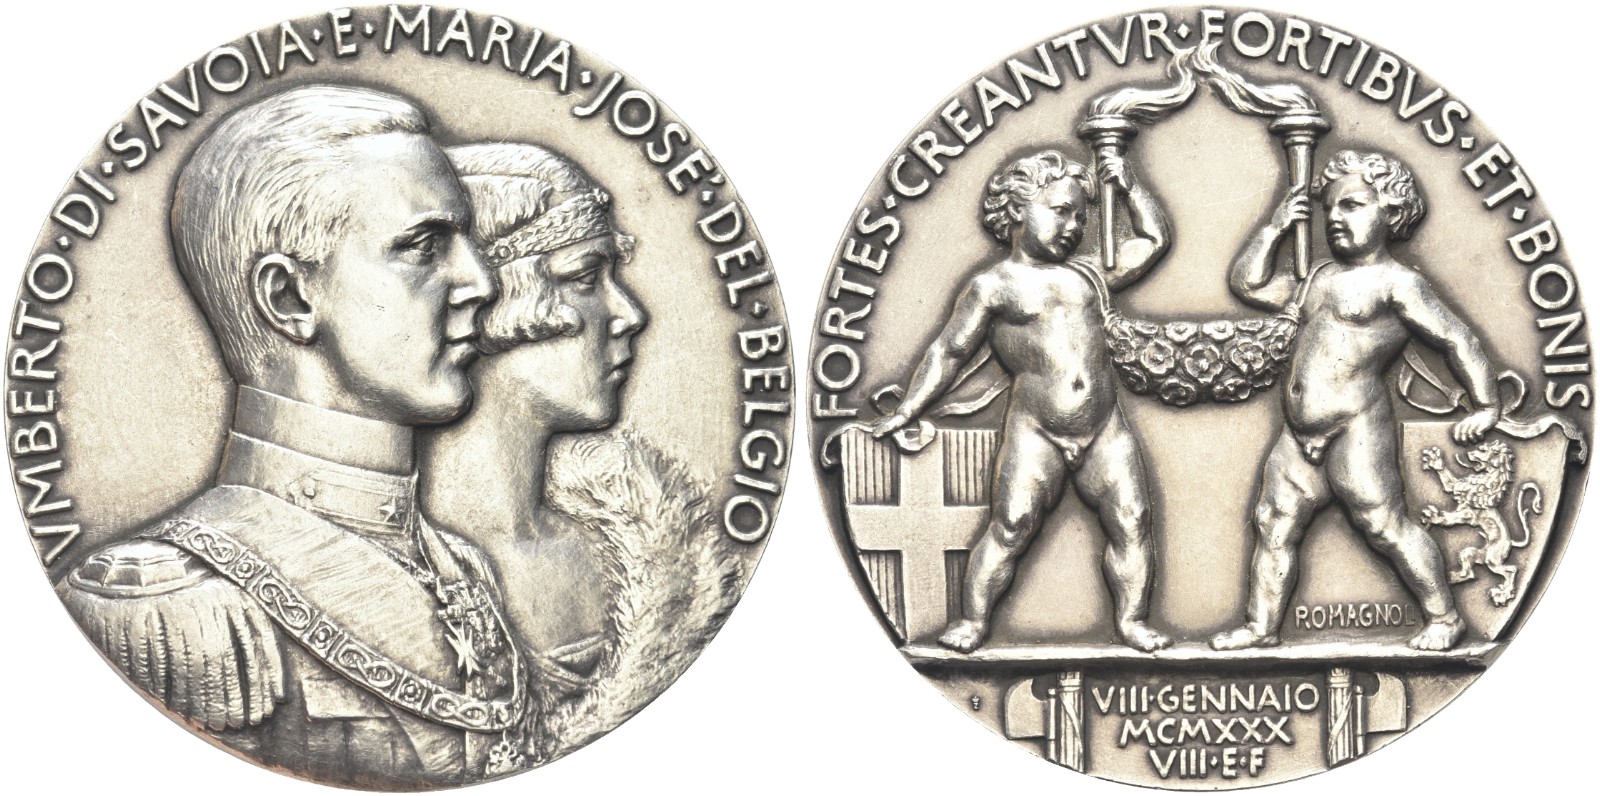 La magnifica medaglia nuziale modellata da Giuseppe Romagnoli e coniata dalla Regia Zecca nel 1930